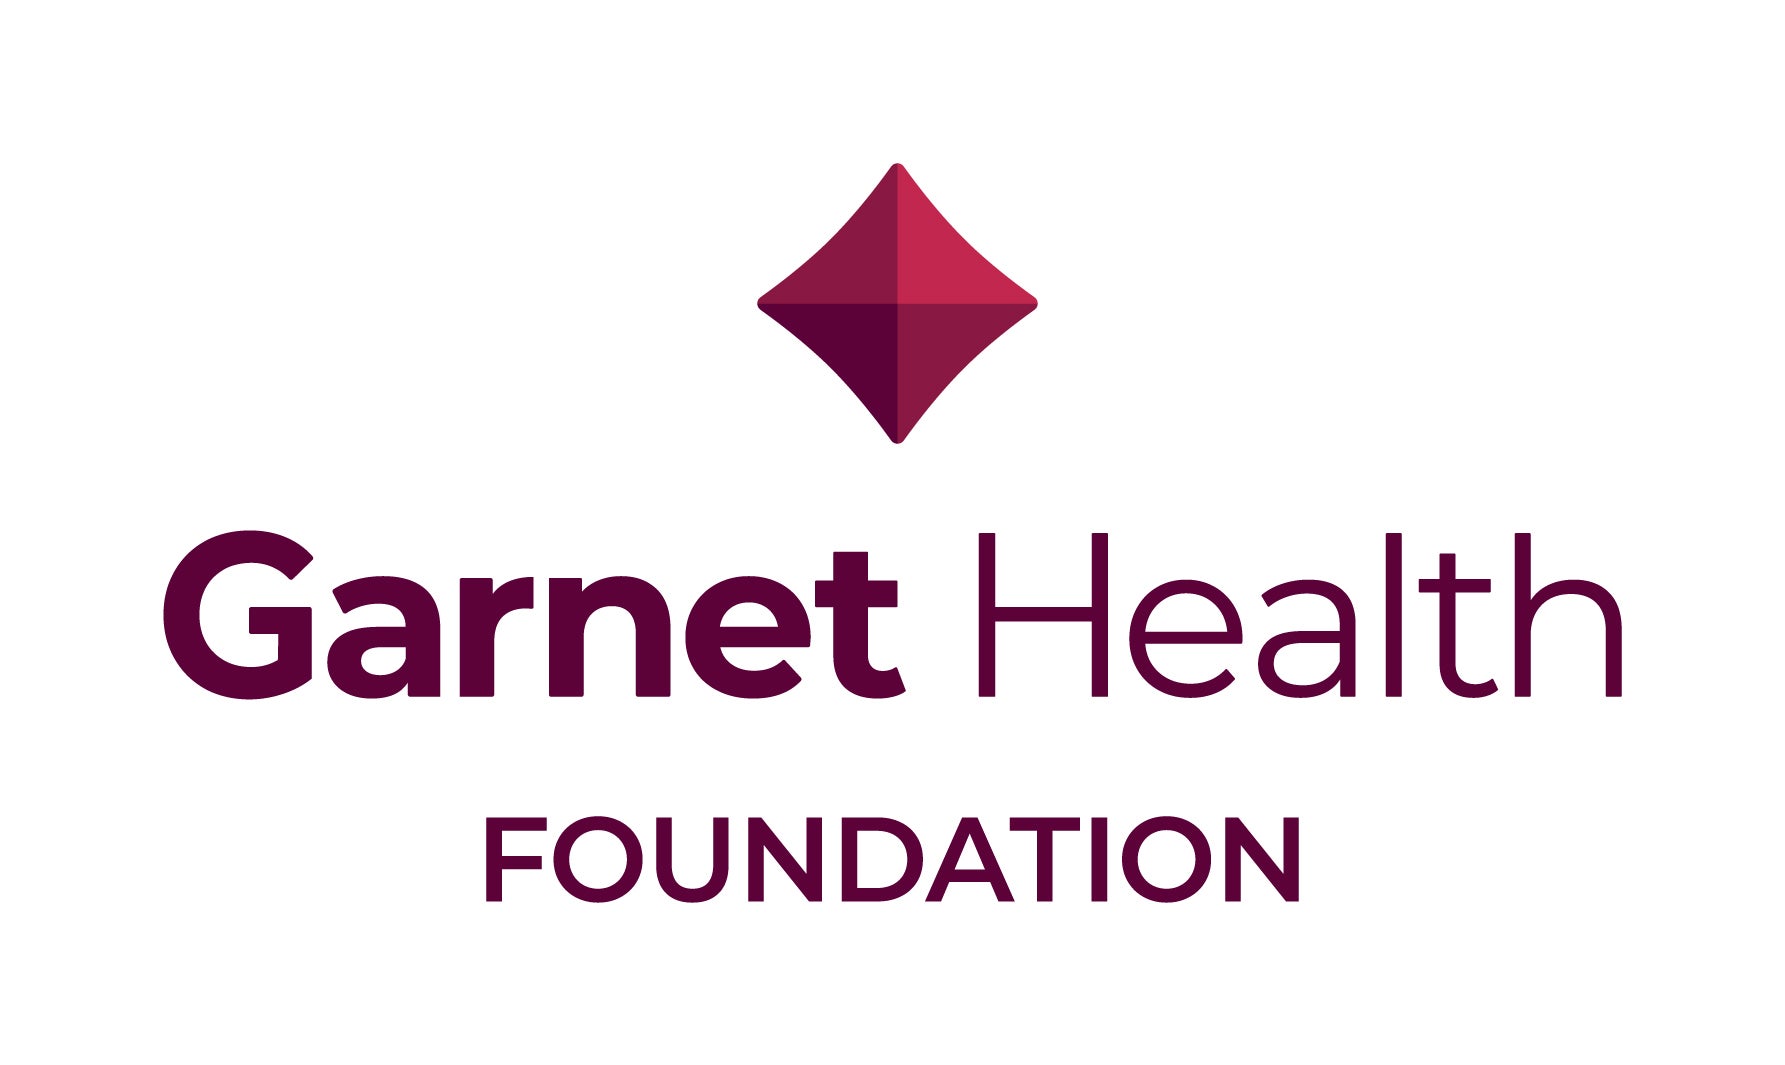 Garnet Health Foundation